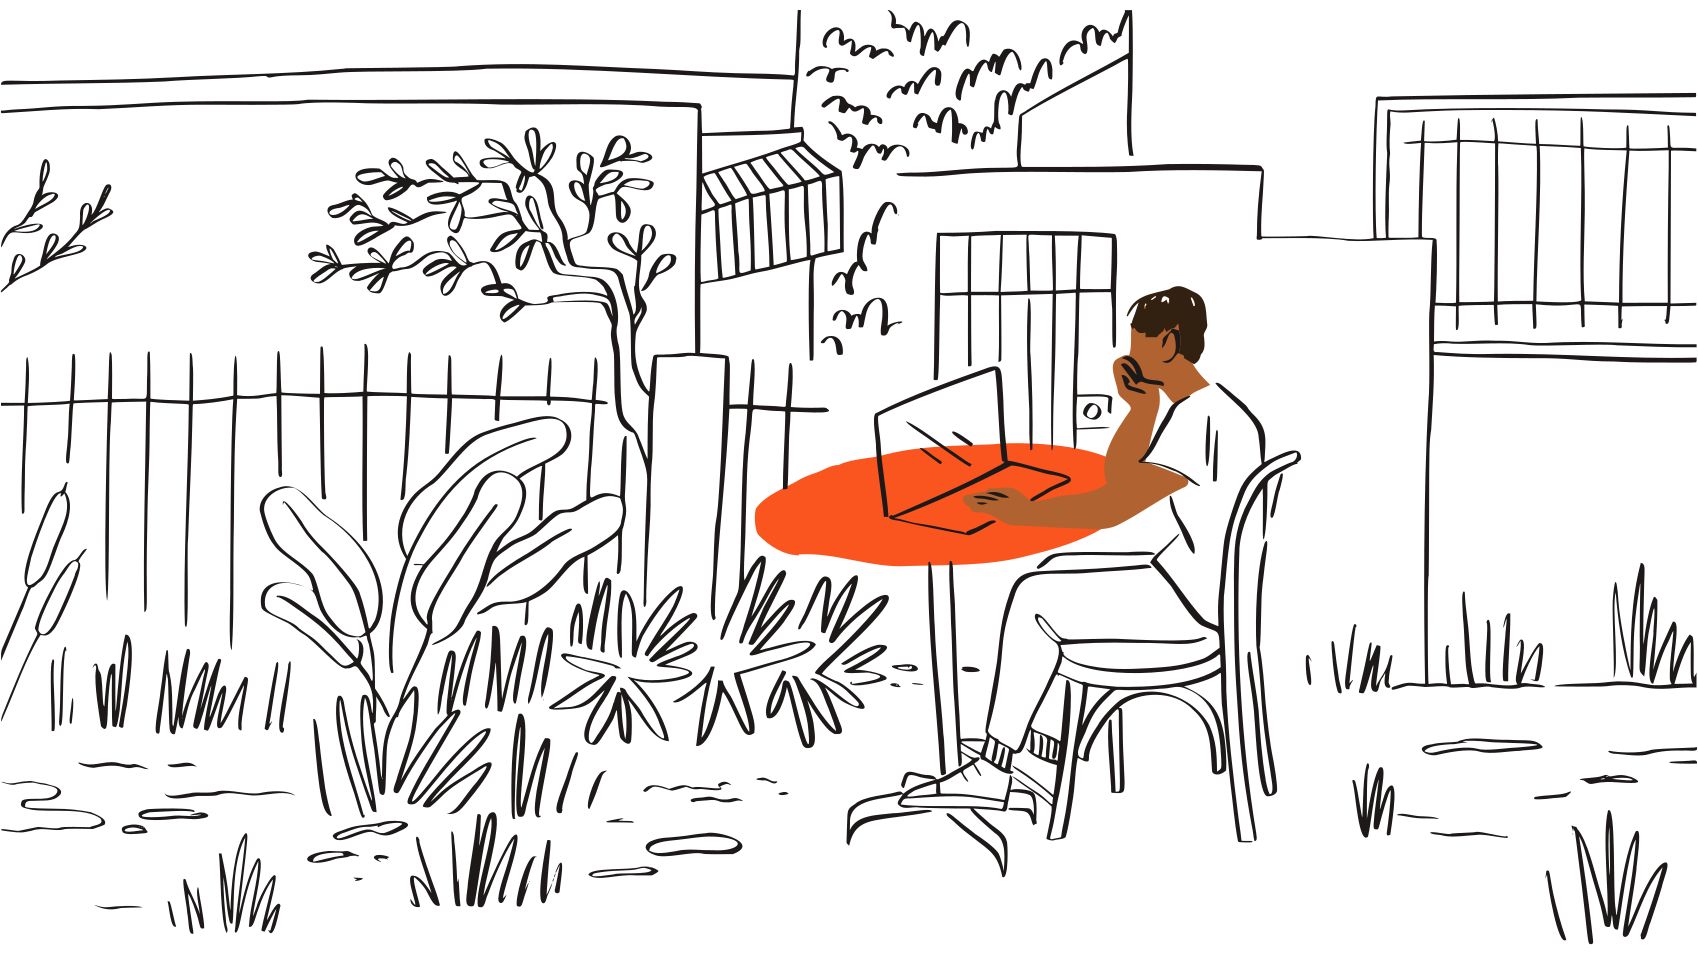 야외 주황색 테이블에 앉아 노트북을 바라보고 있는 사람 일러스트레이션